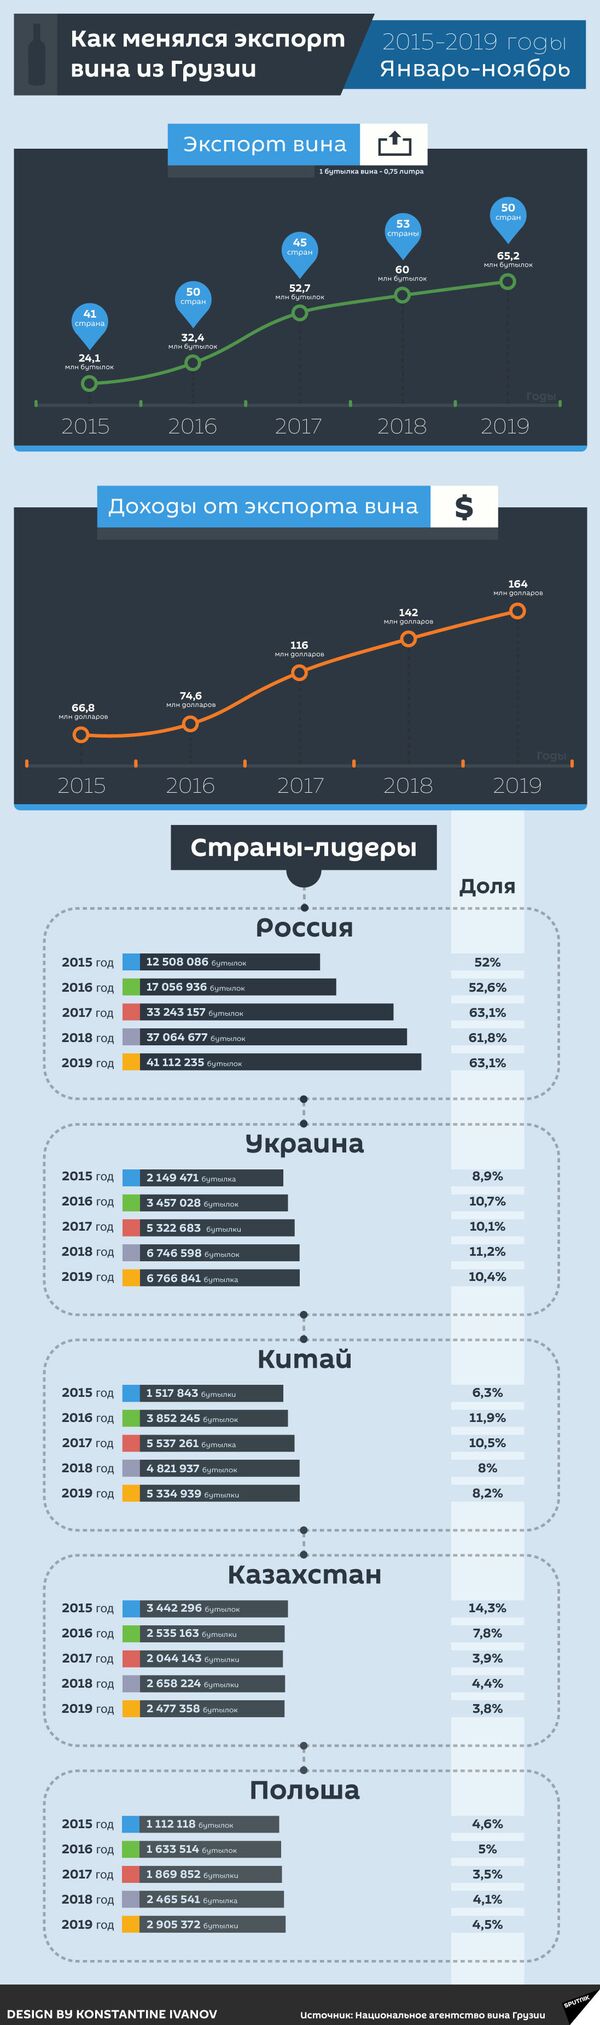 Как изменялся экспорт вина из Грузии - Sputnik Грузия